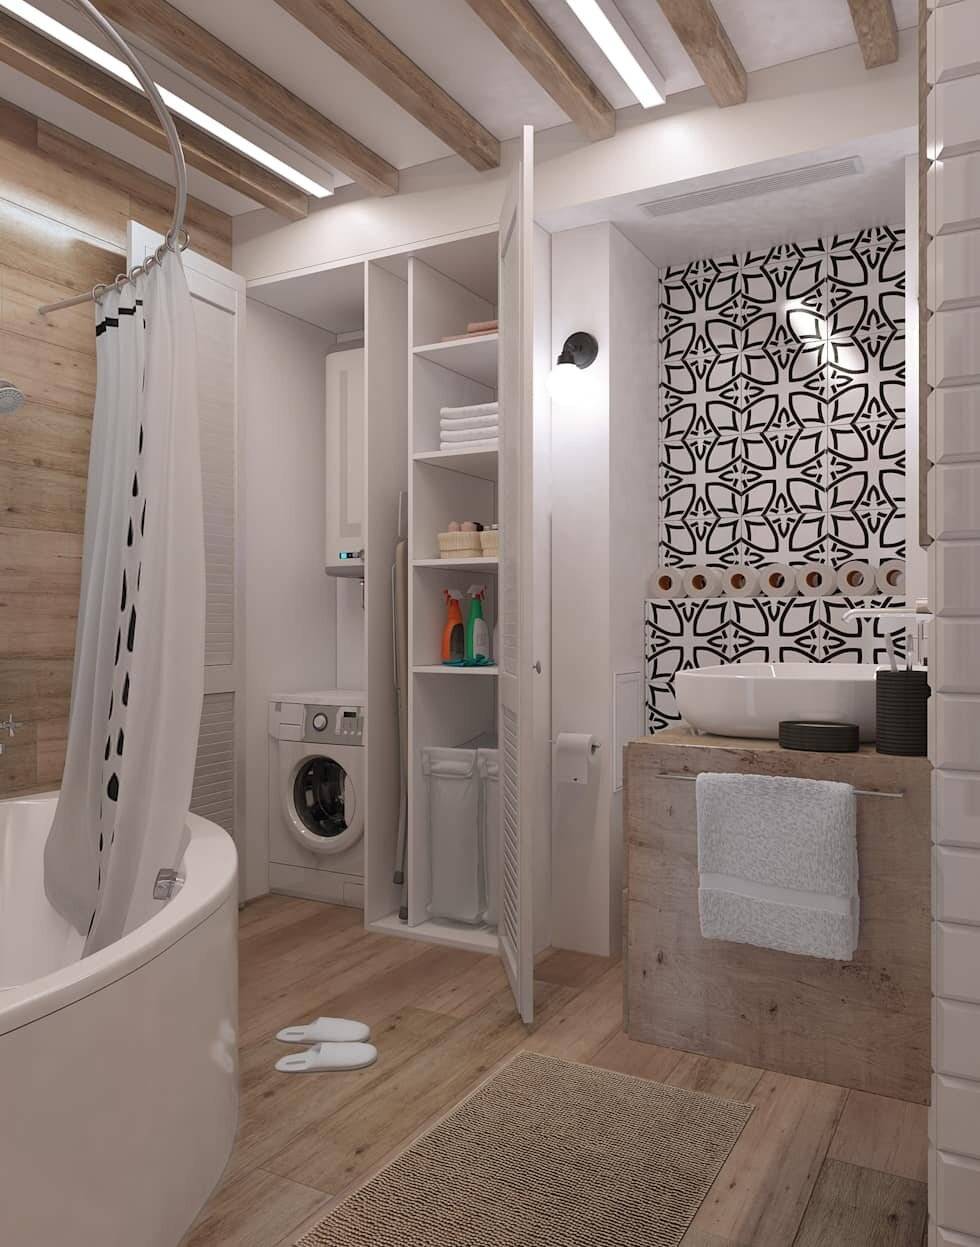 Идеи дизайна интерьера ванной комнаты в скандинавском стиле, фото